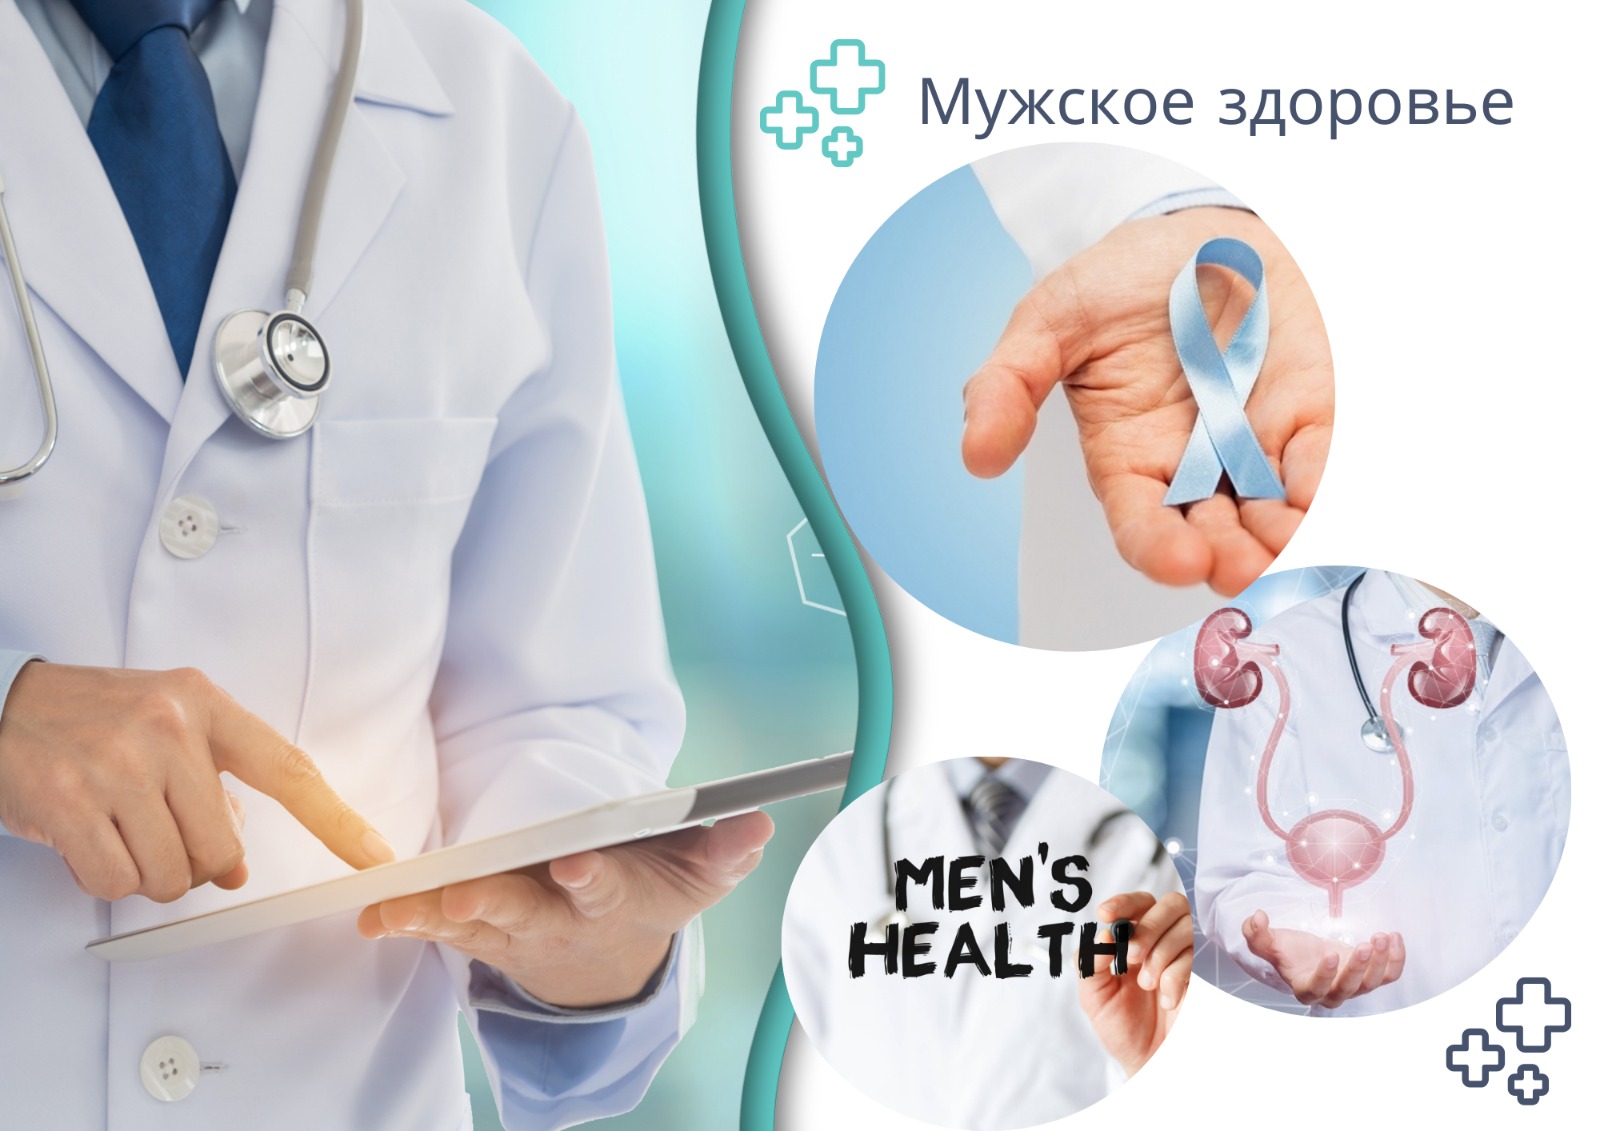 МЦРБ Енбекшиказахского района запускает новый формат онлайн-опросник о состоянии мужского здоровья